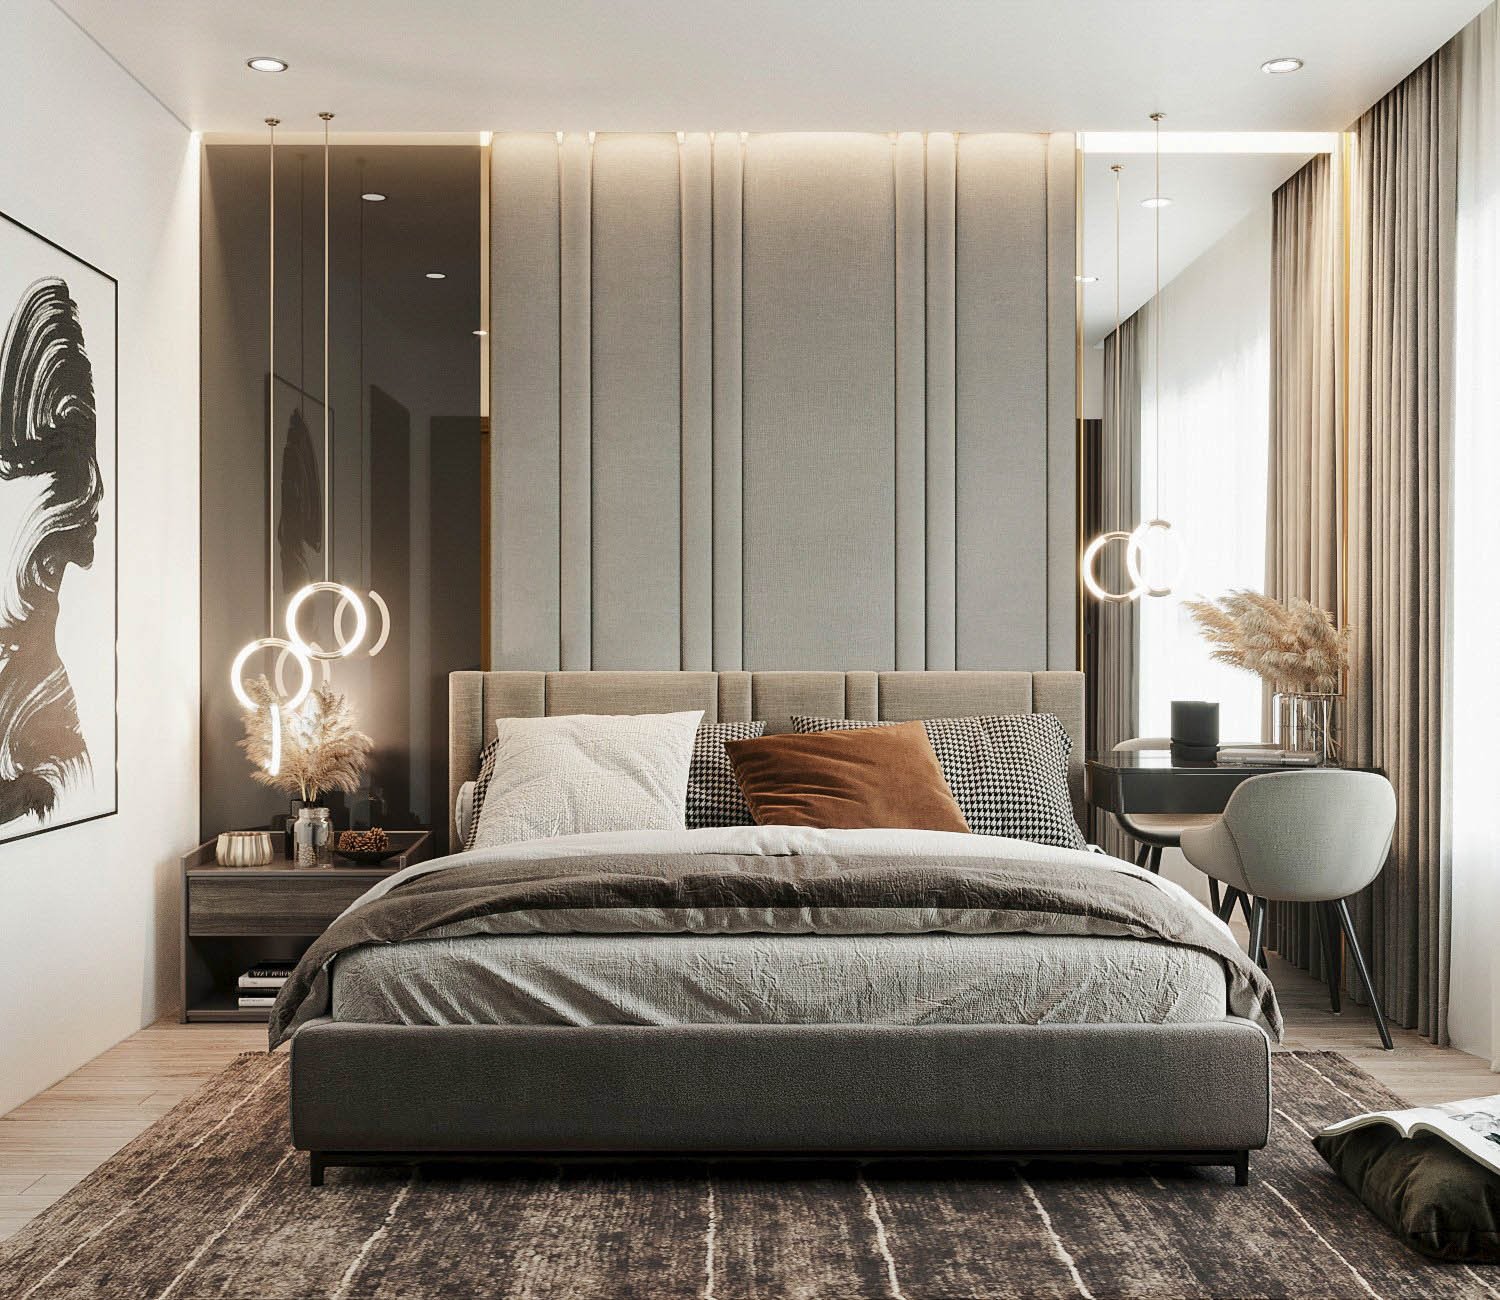 Phòng ngủ master được thiết kế và bài trí theo phong cách Luxury sang trọng, hiện đại thể hiện đẳng cấp cũng như gu thẩm mỹ của gia chủ.